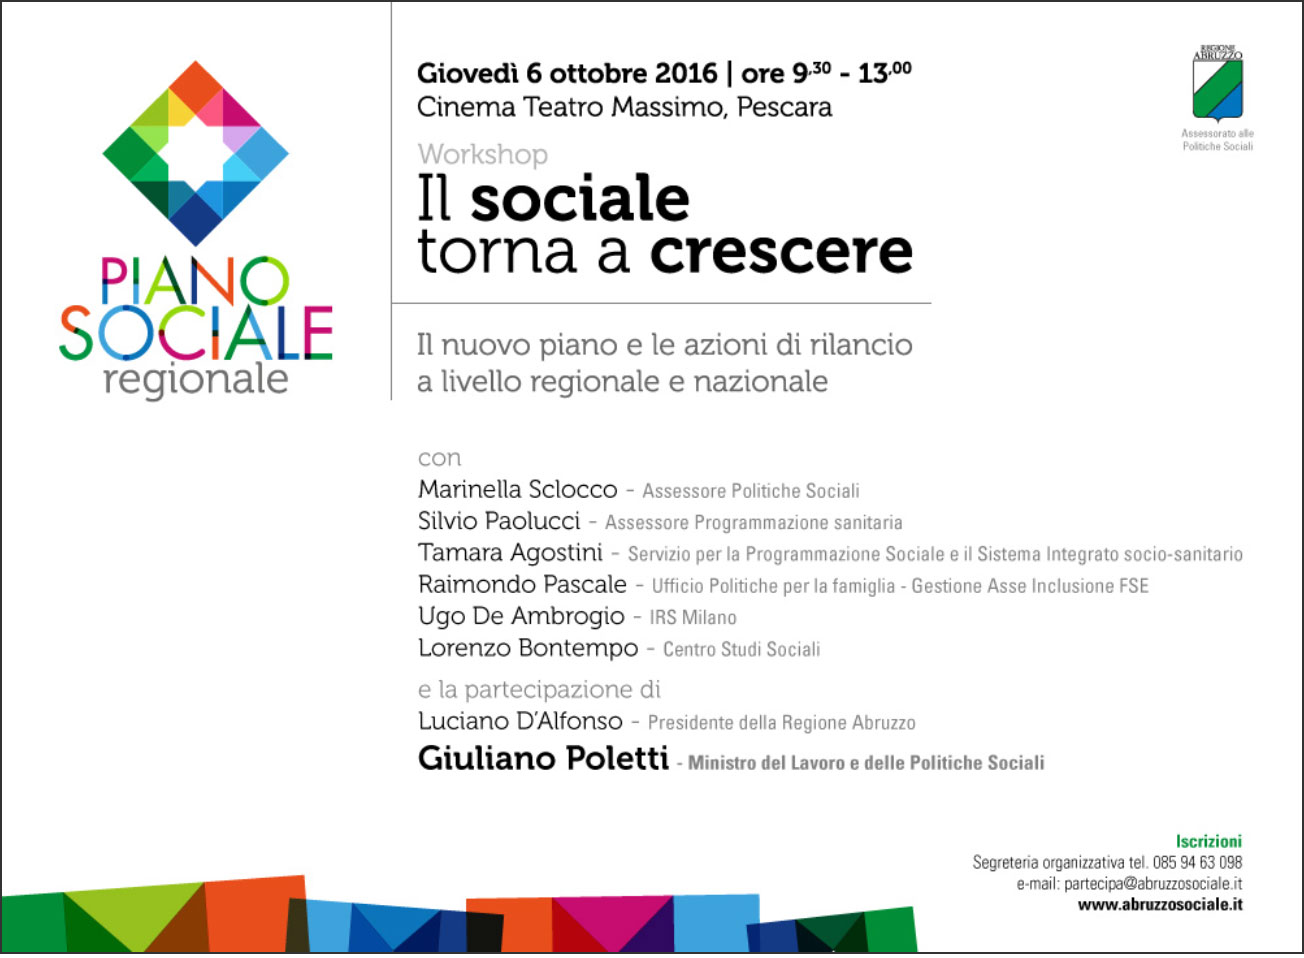 Workshop sul nuovo Piano Sociale alla presenza del Ministro Poletti